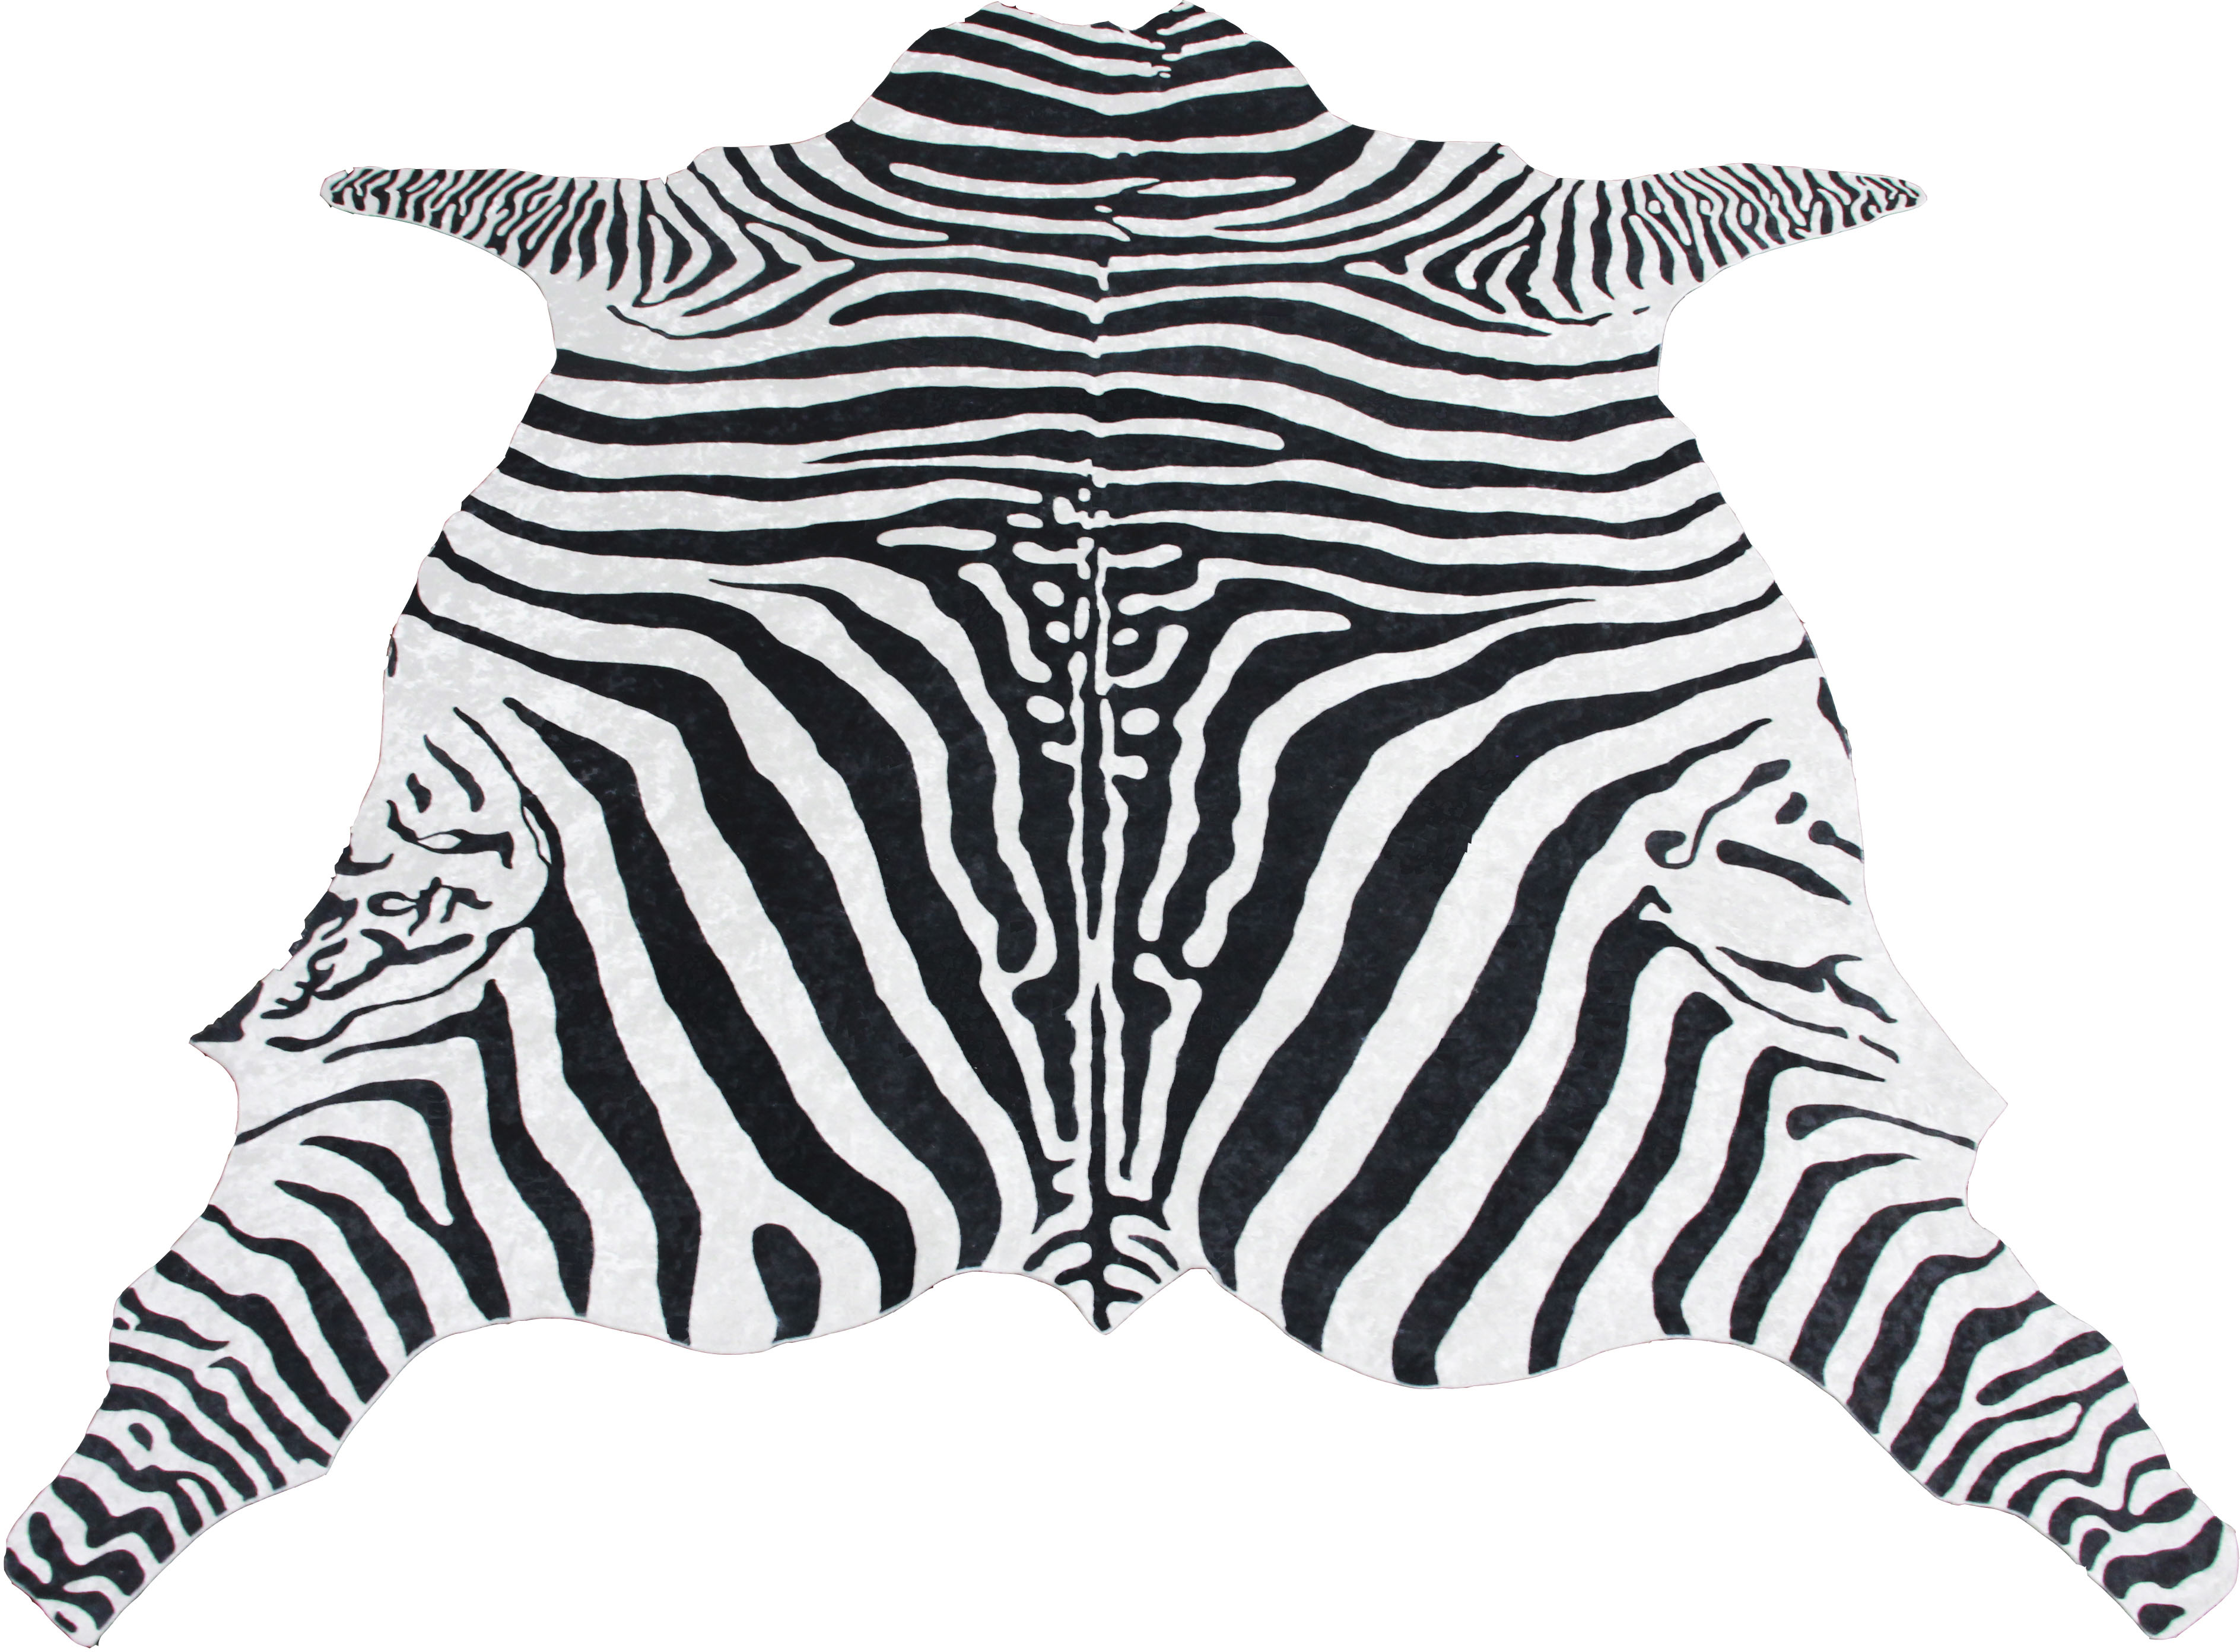 Bruno Banani Teppich Zebra, tierfellförmig, 6 mm Höhe, Druckteppich in Fellform, Zebra-Optik, Wohnzimmer schwarz-weiß Teppiche